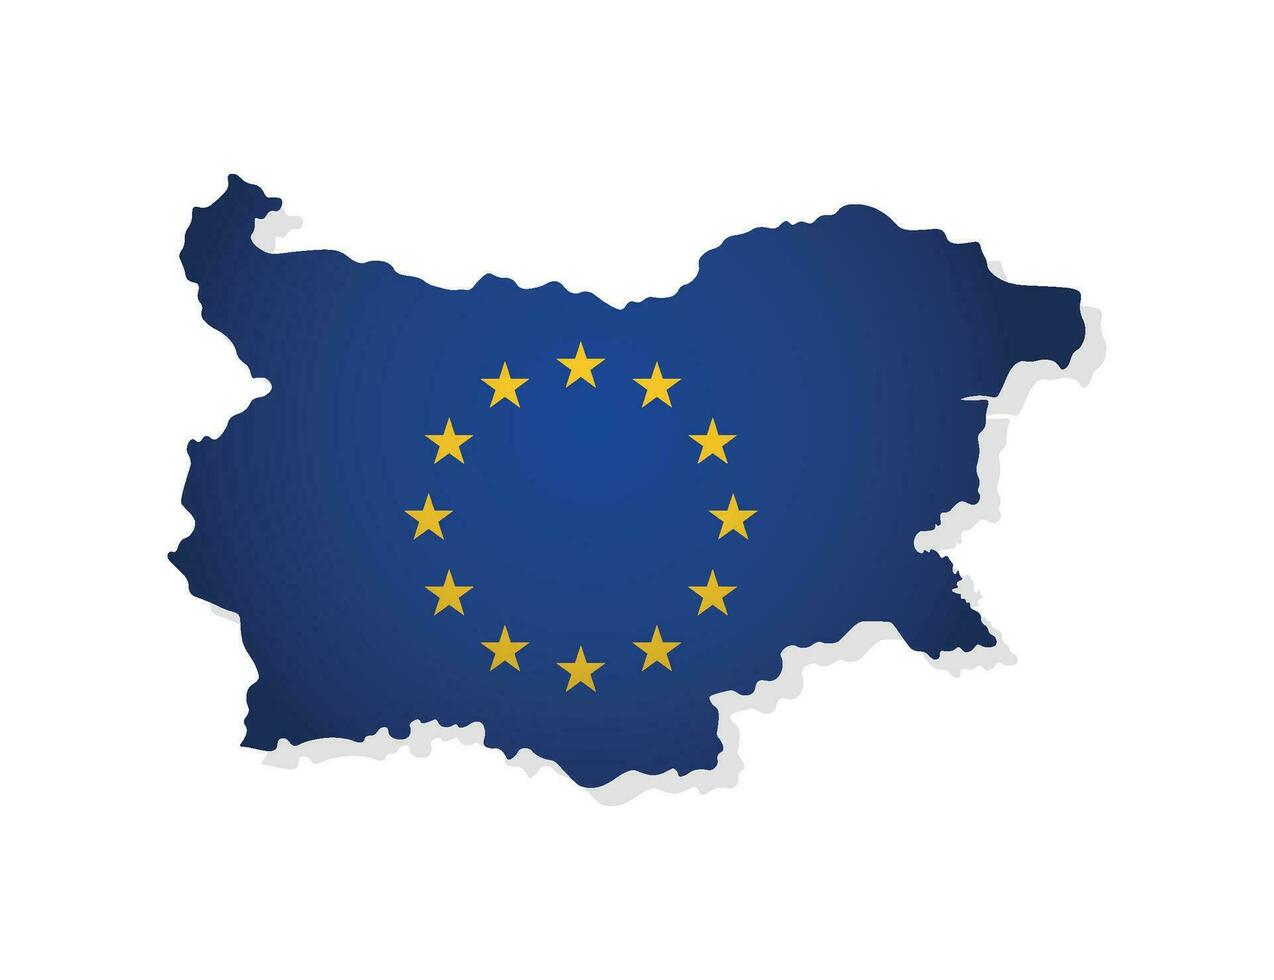 vettore illustrazione con isolato carta geografica di membro di europeo unione - Bulgaria. concetto decorato di il Unione Europea bandiera con oro stelle su blu sfondo. moderno design